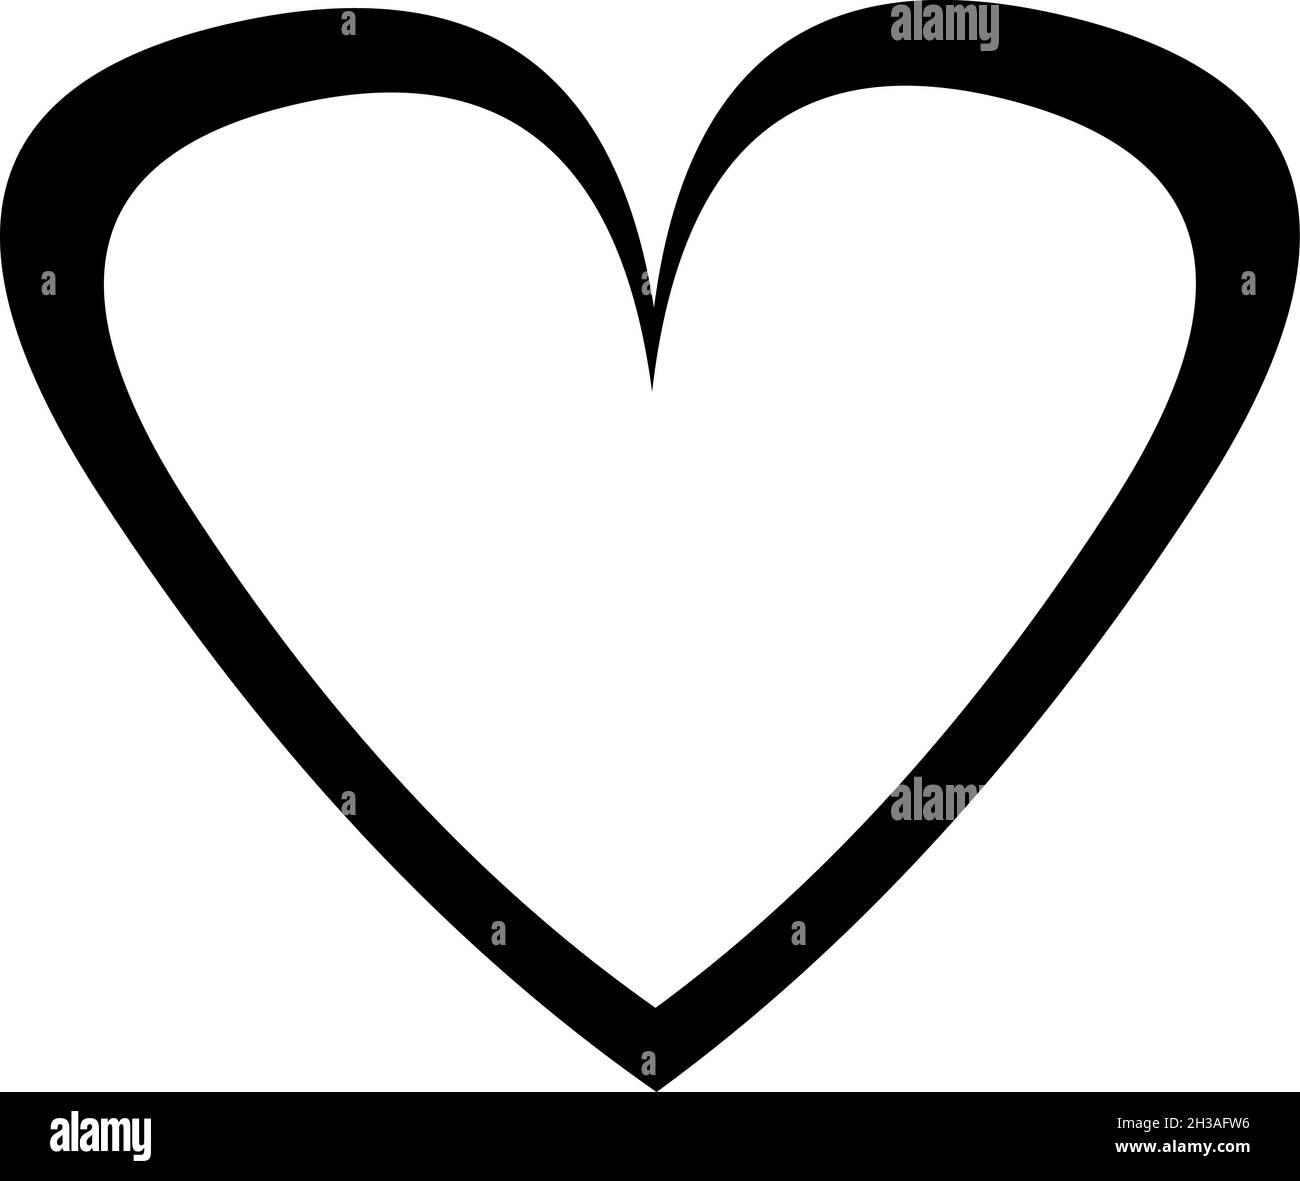 Ilustración vectorial de un corazón dibujado en blanco y negro con contornos pintados Ilustración del Vector